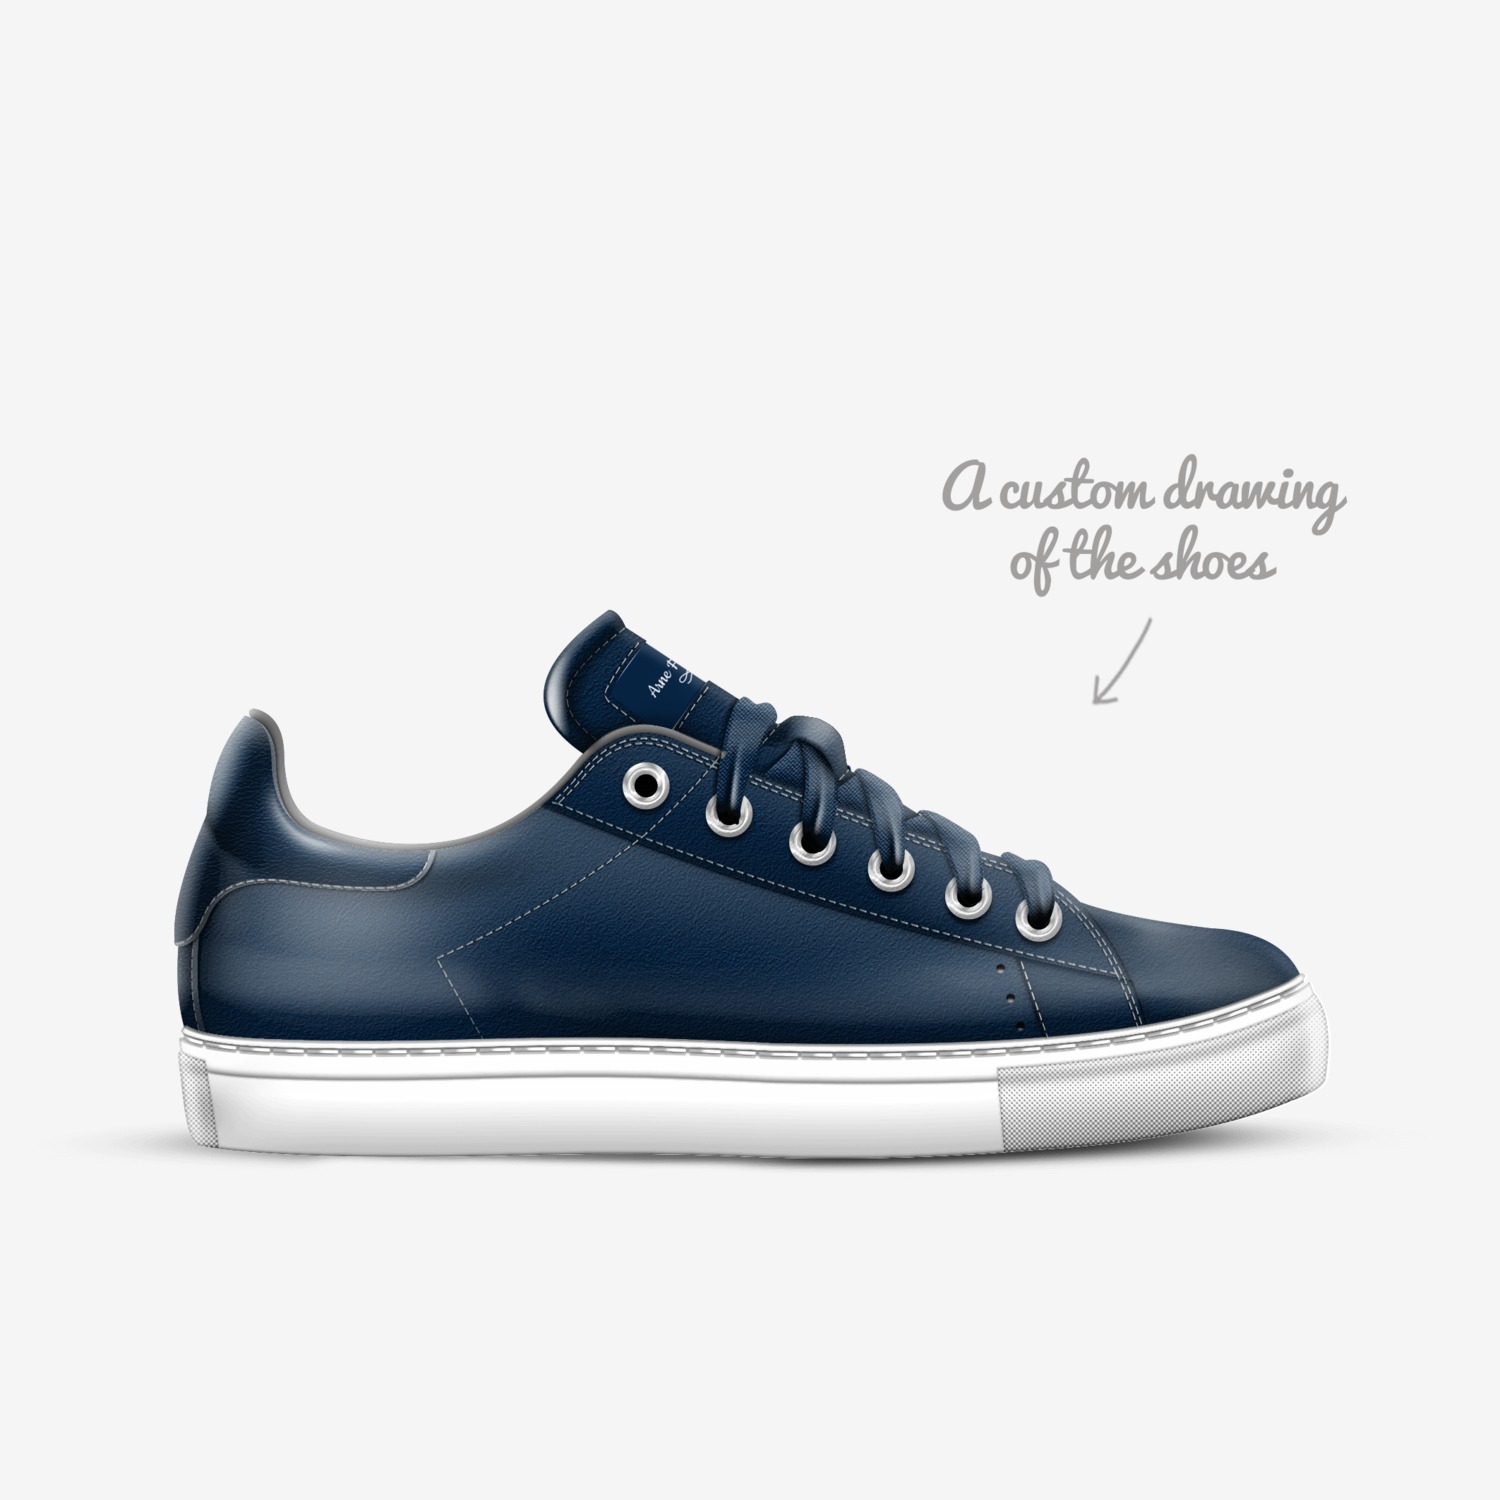 Ferreira | A Custom Shoe concept by Schulz